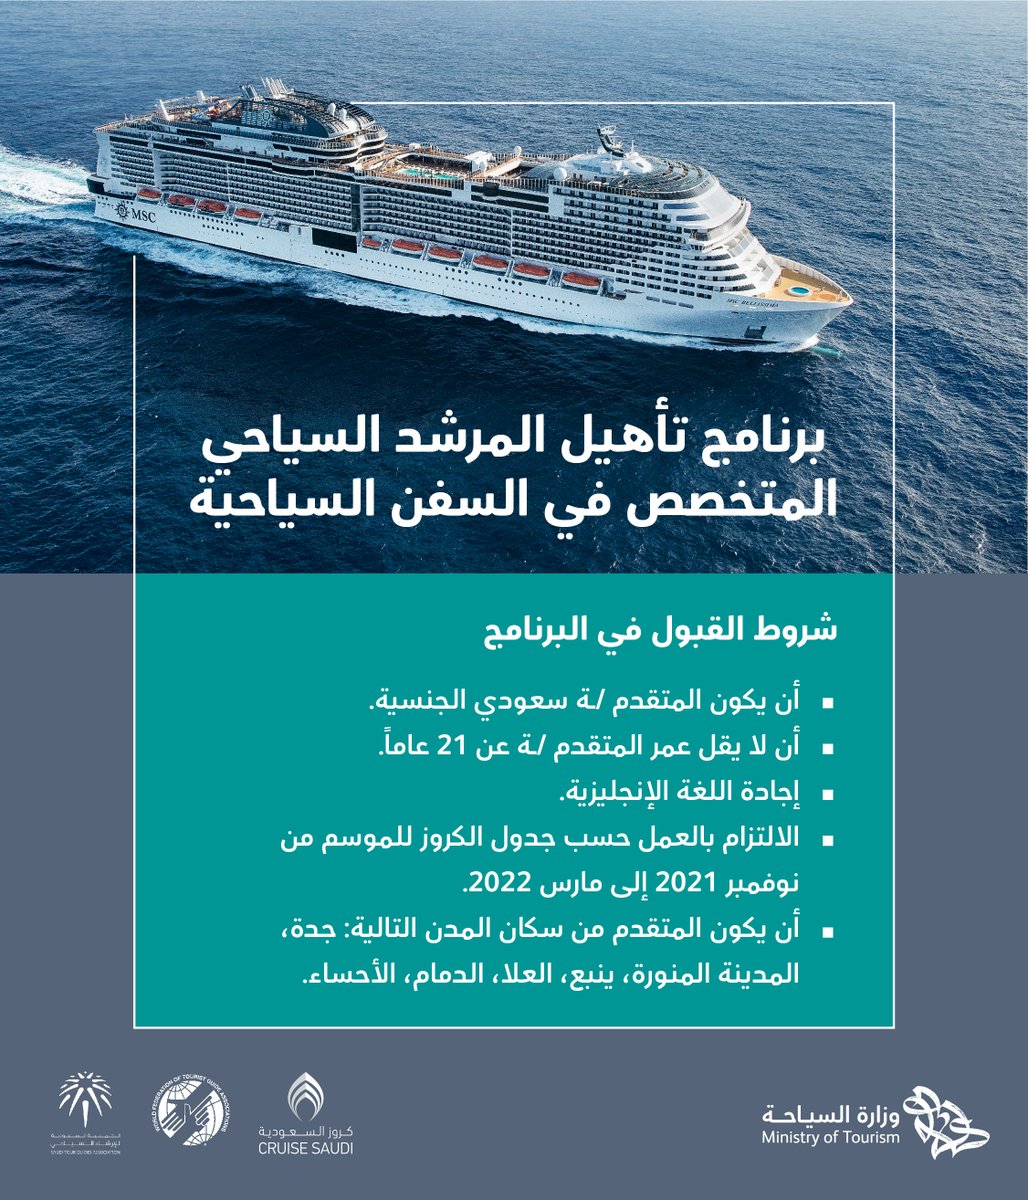  وزارة السياحة تعلن بدء التقديم في (برنامج الإرشاد للسفن السياحية) مع مزايا متعددة